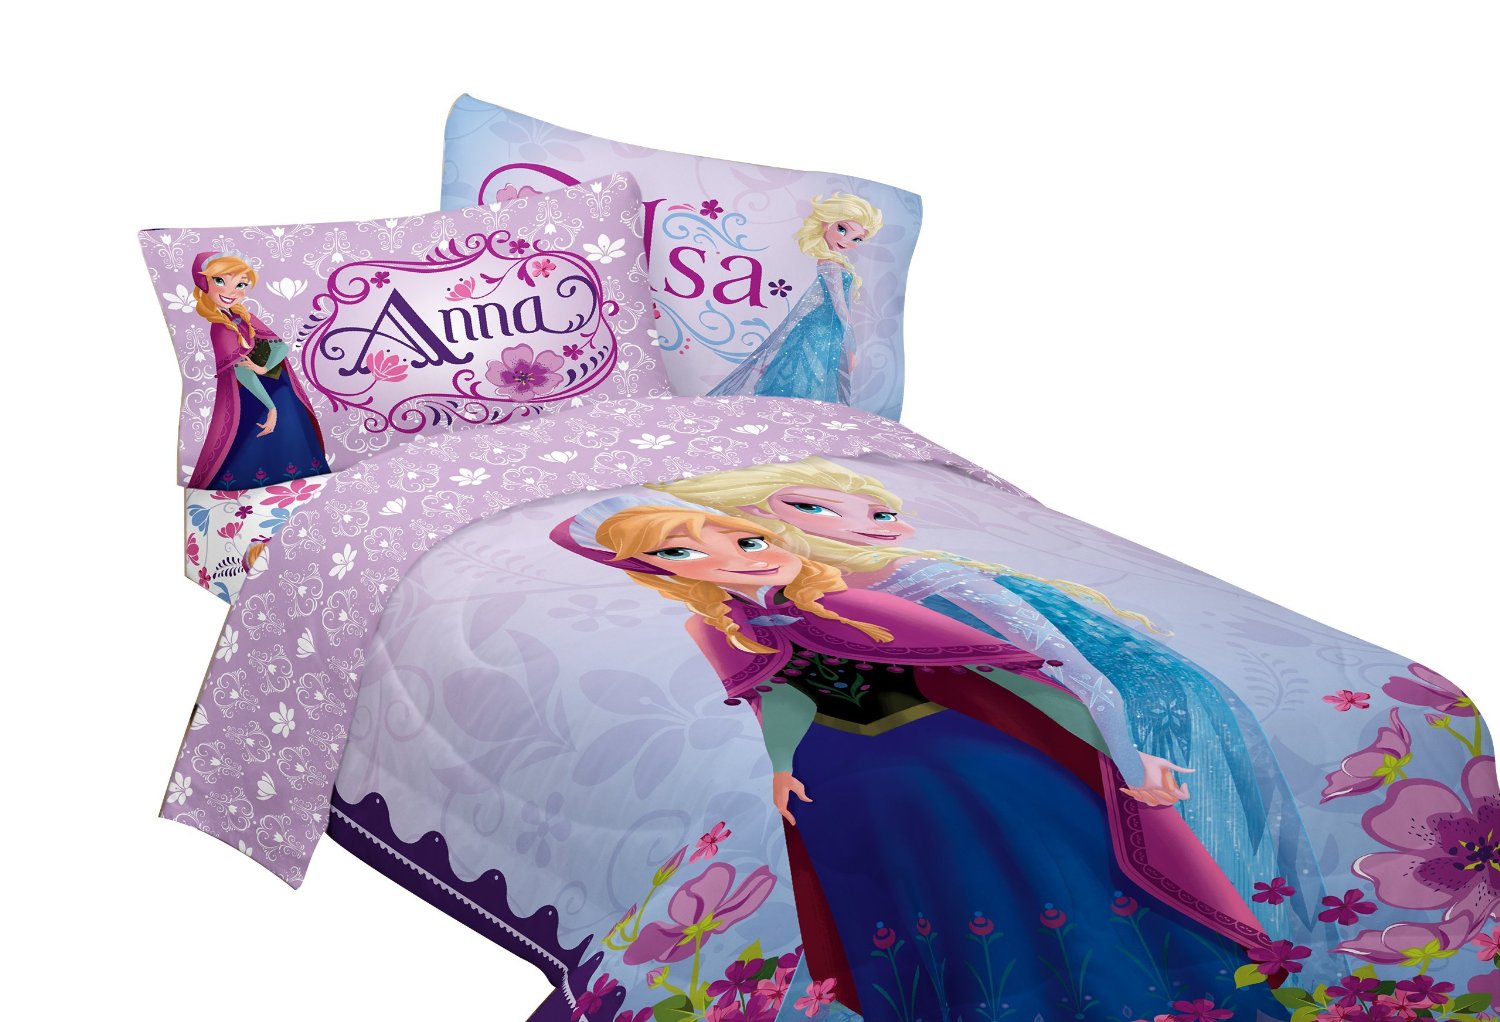 Anna & Elsa Twin Bed Set